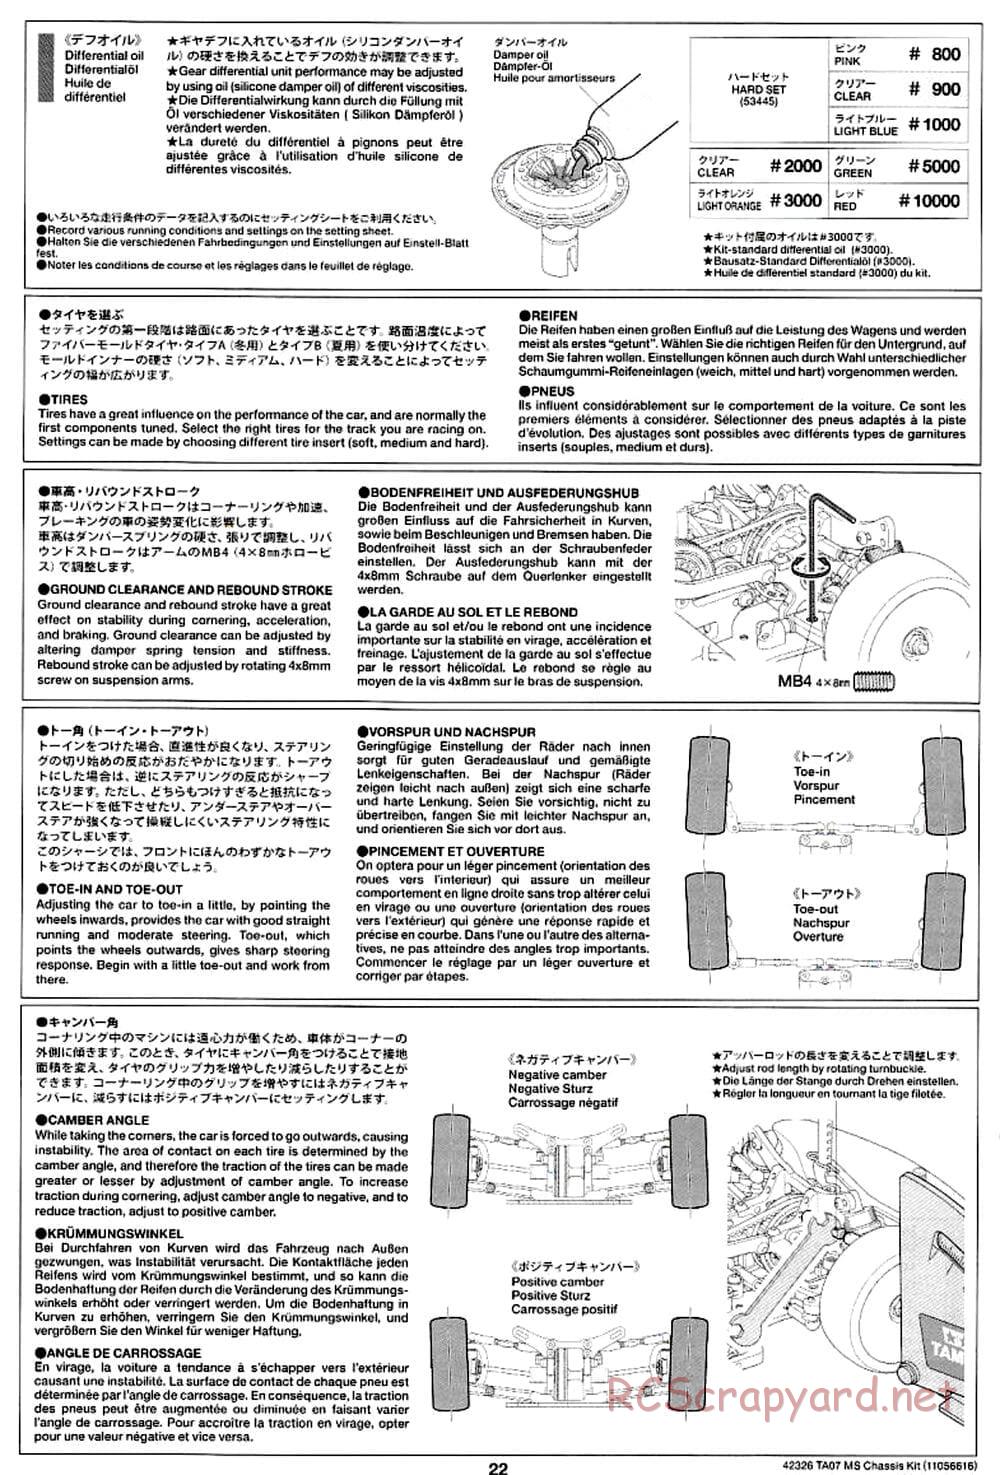 Tamiya - TA07 MS Chassis - Manual - Page 22